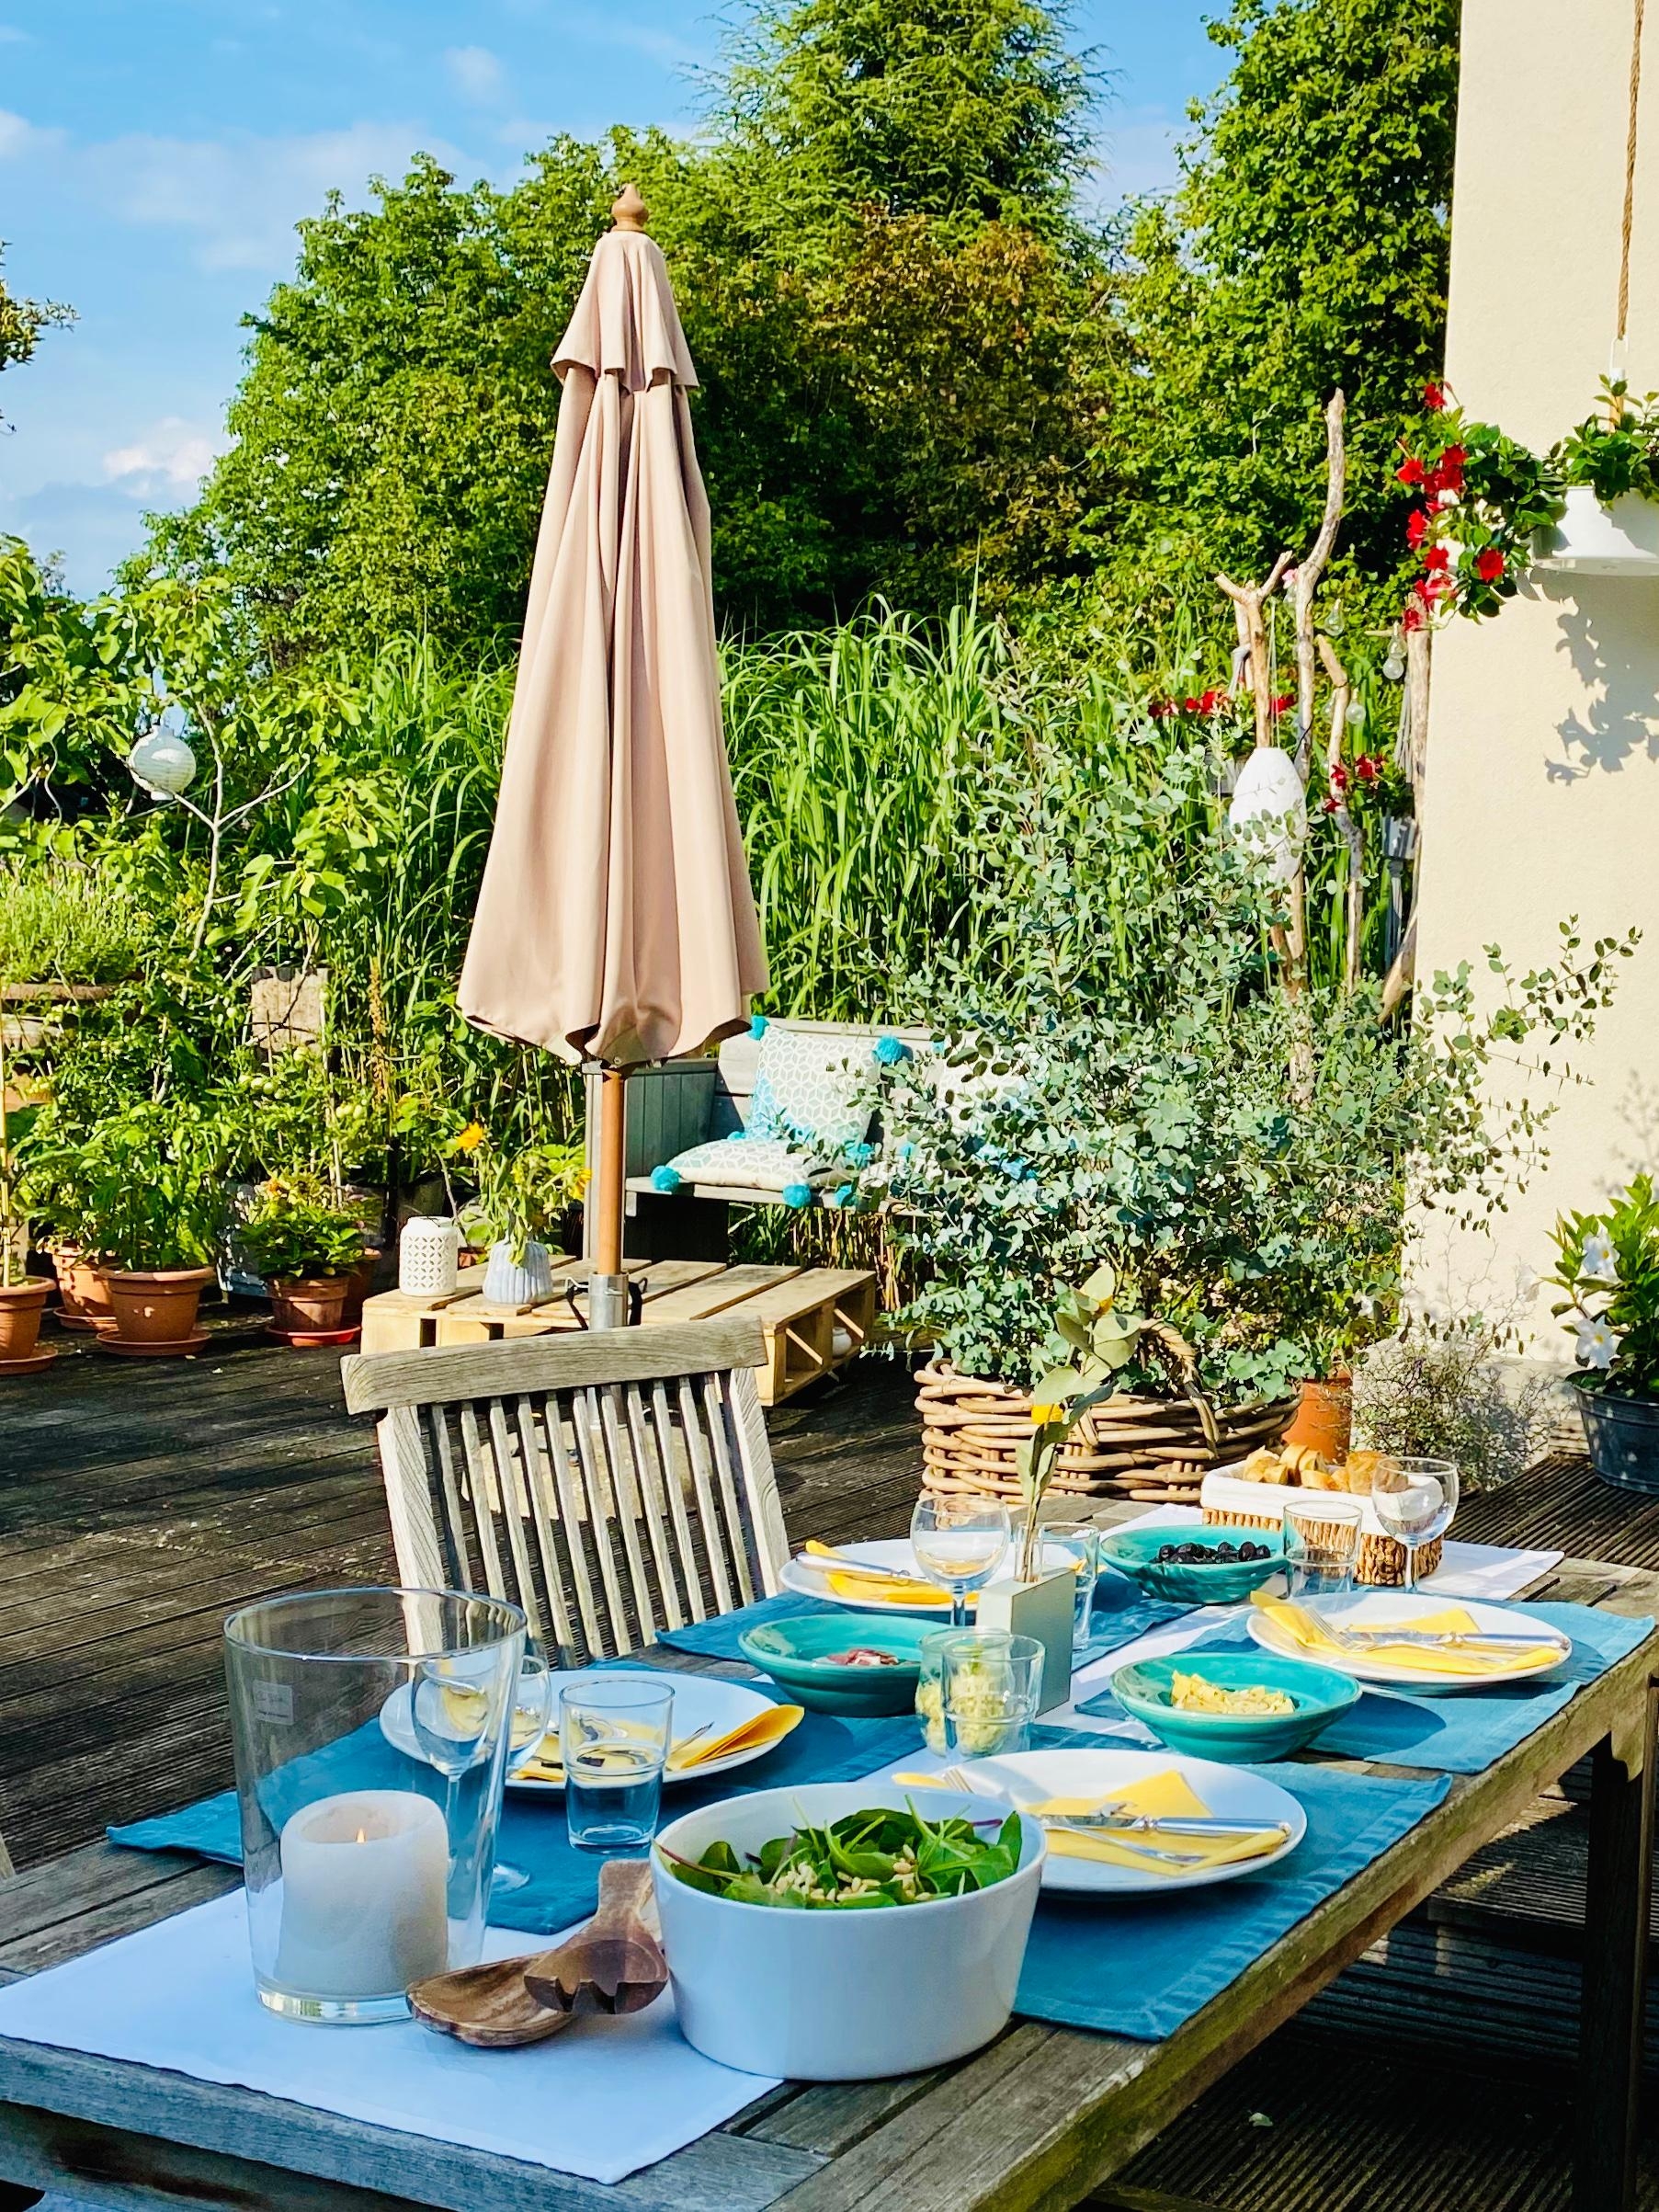 So lässt es sich im Sommer doch aushalten ...
#urlaubzuhause #terrasse #summerfeeling #landliebe #gartenglück #garten 